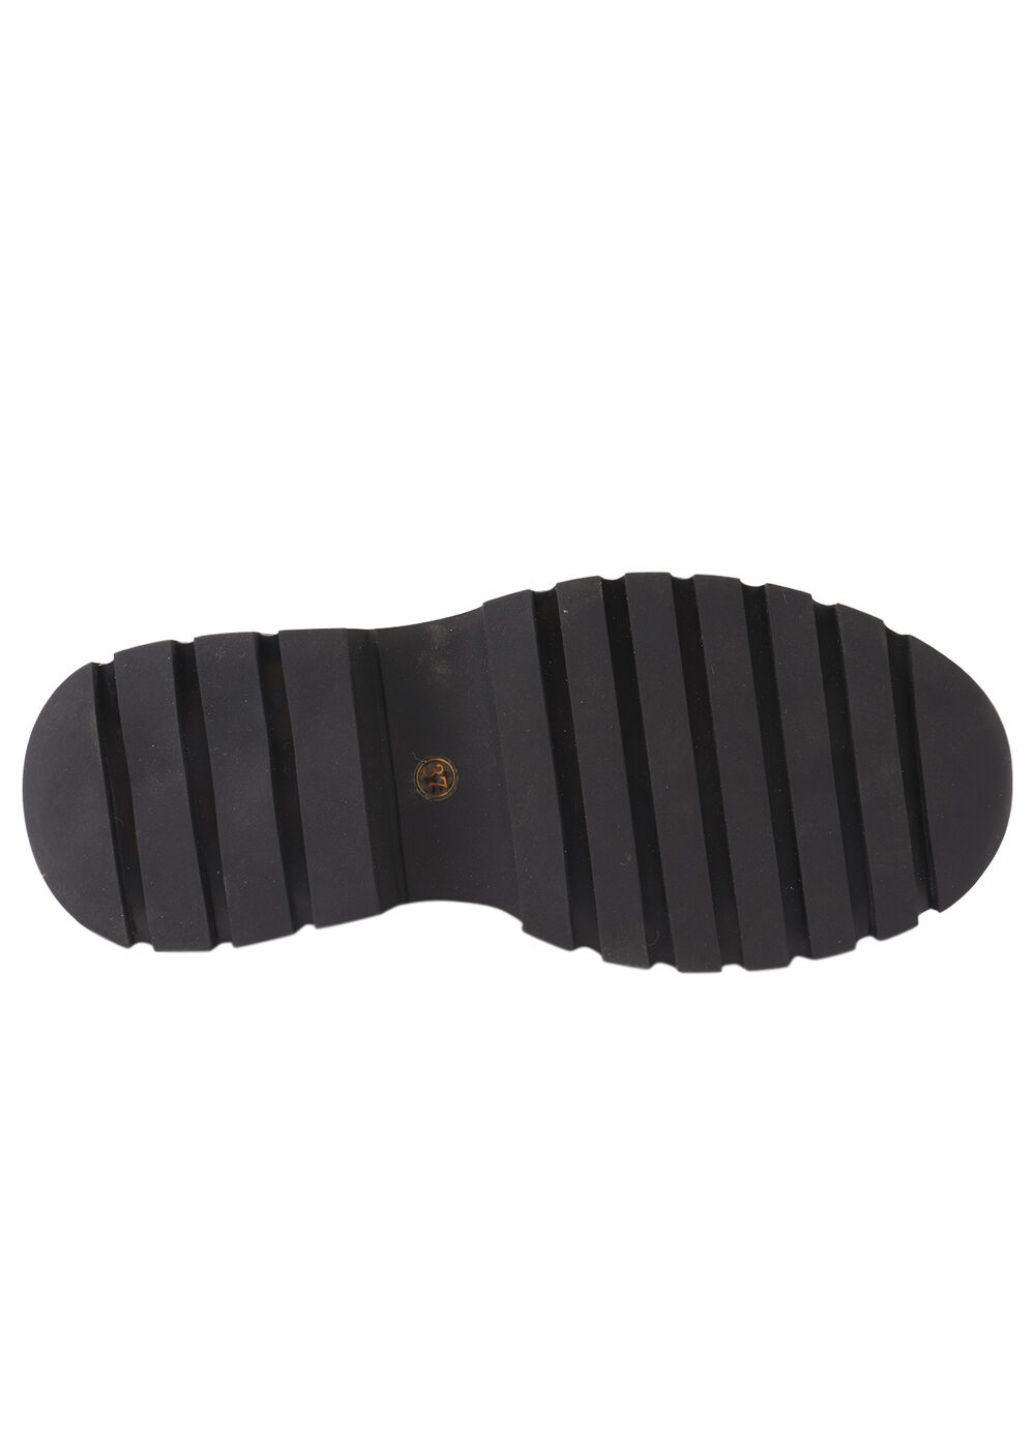 Туфлі жіночі з натуральної лакової шкіри, на платформі, колір чорний, Brocoly 330-21dtc (257438187)